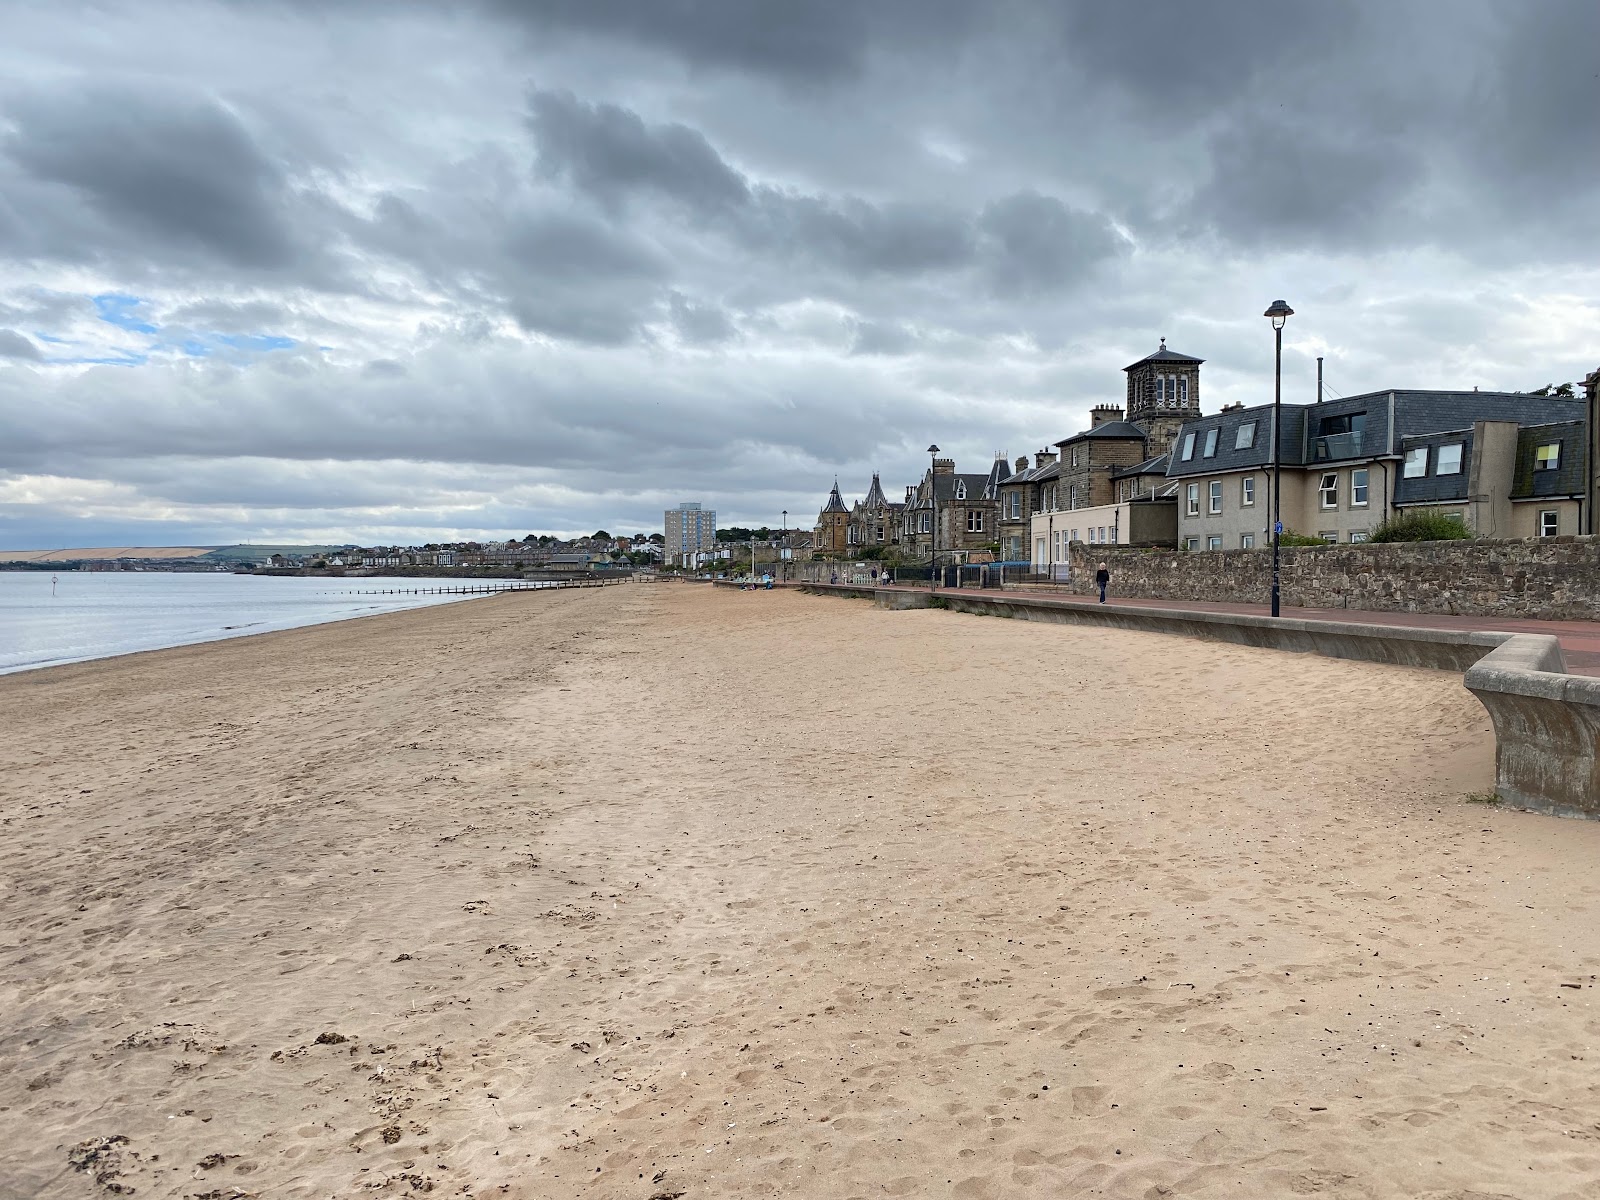 Zdjęcie Plaża Musselburgh - popularne miejsce wśród znawców relaksu